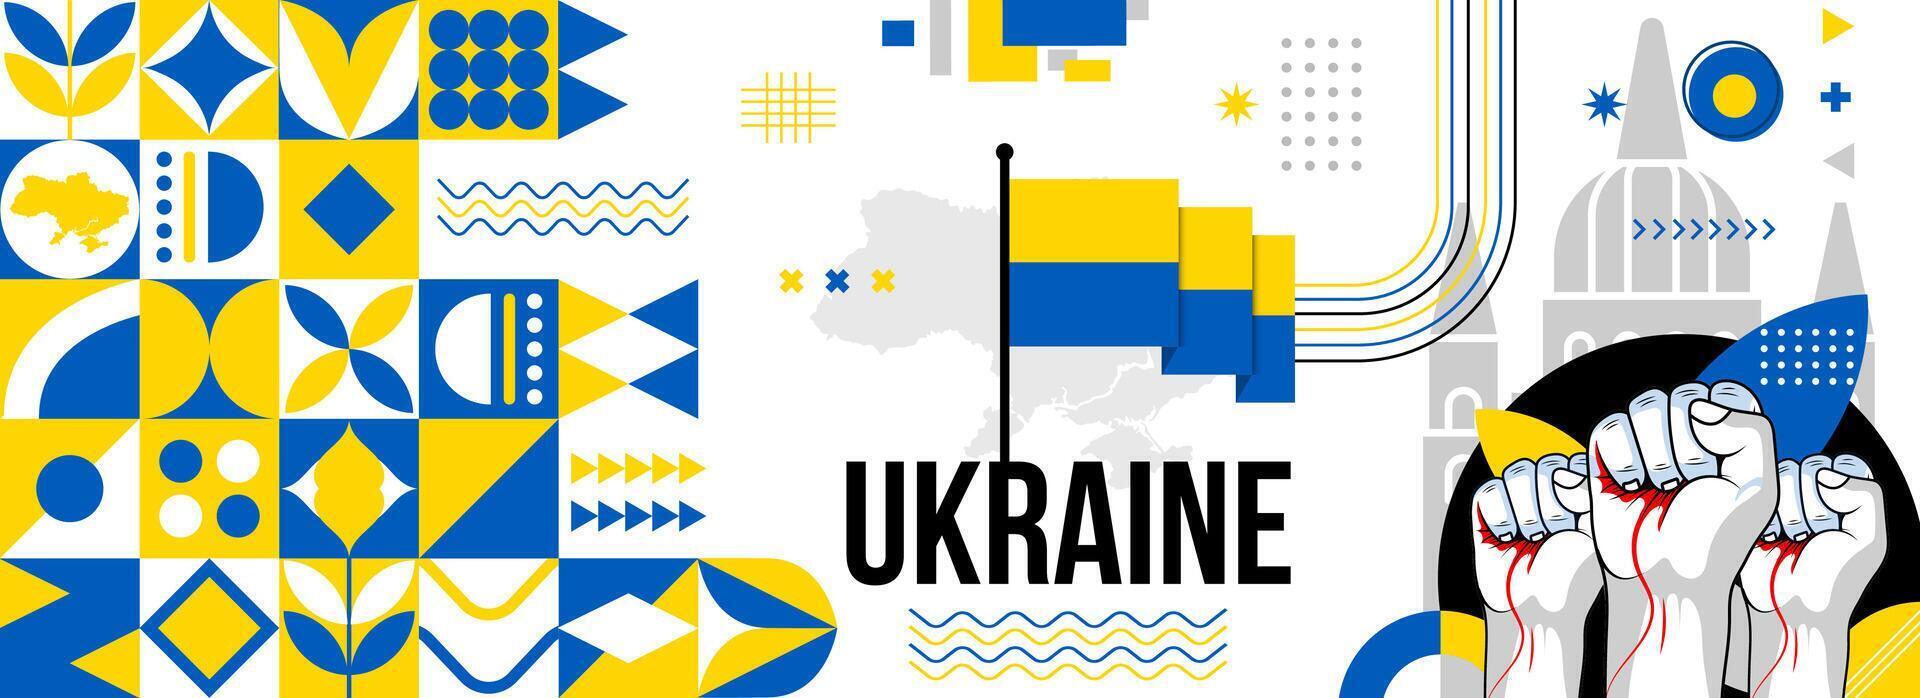 Ucrania nacional o independencia día bandera para país celebracion. bandera y mapa de Ucrania con elevado puños moderno retro diseño con tiporgafia resumen geométrico iconos vector ilustración